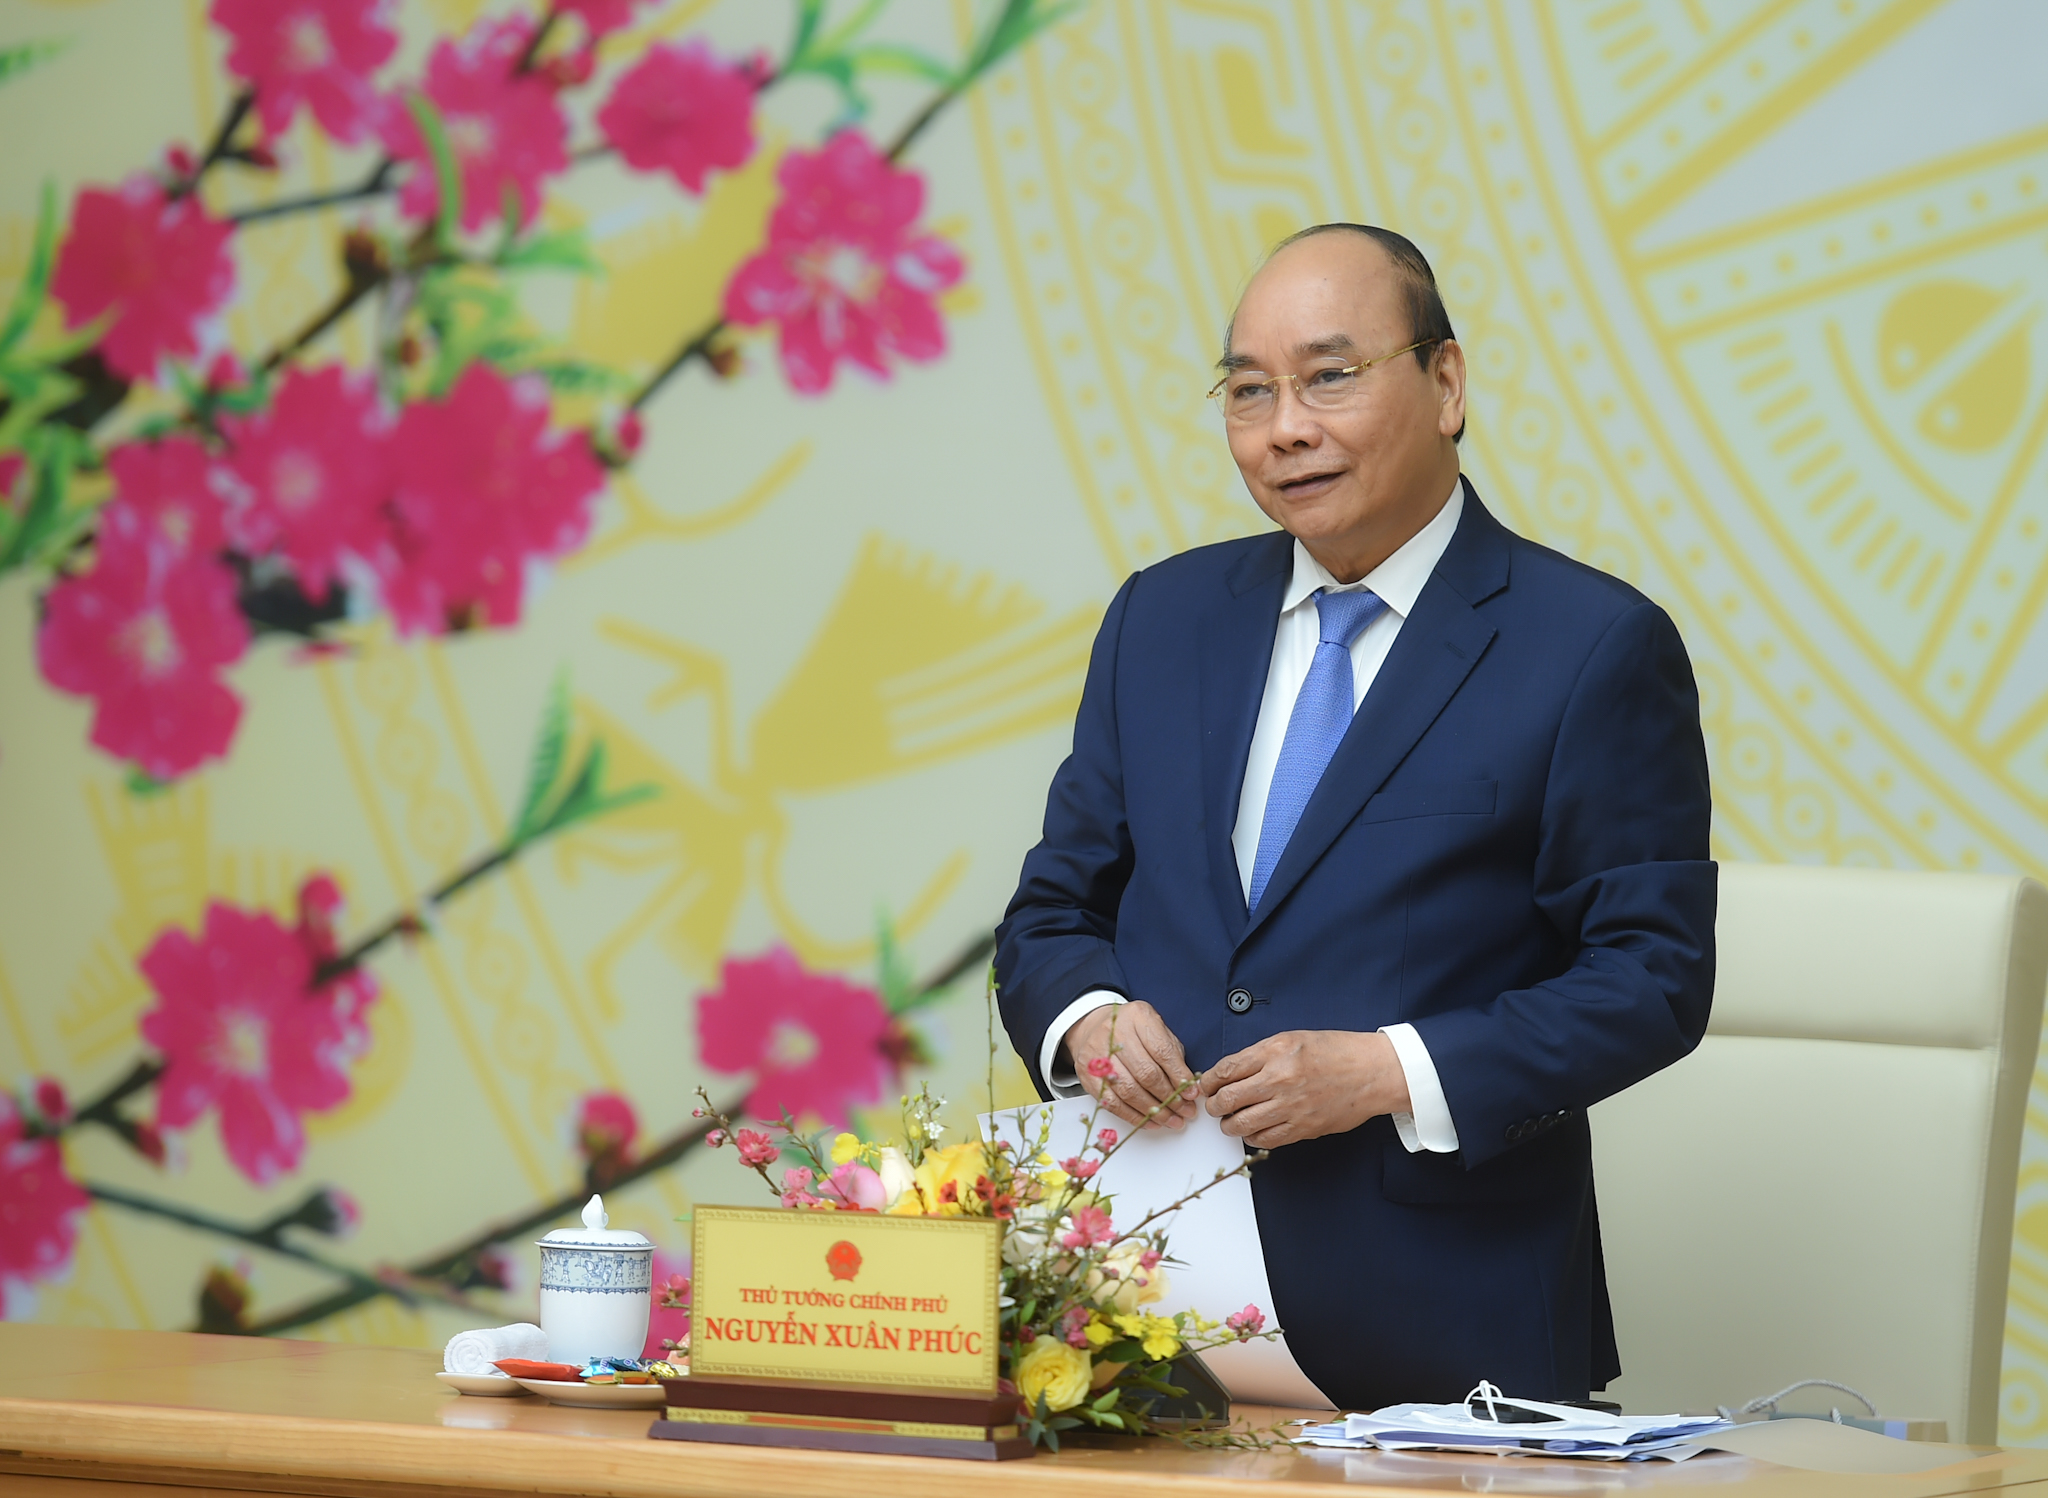 Thủ tướng Nguyễn Xuân Phúc: Tập trung xử lý công việc ngay từ ngày làm việc đầu tiên